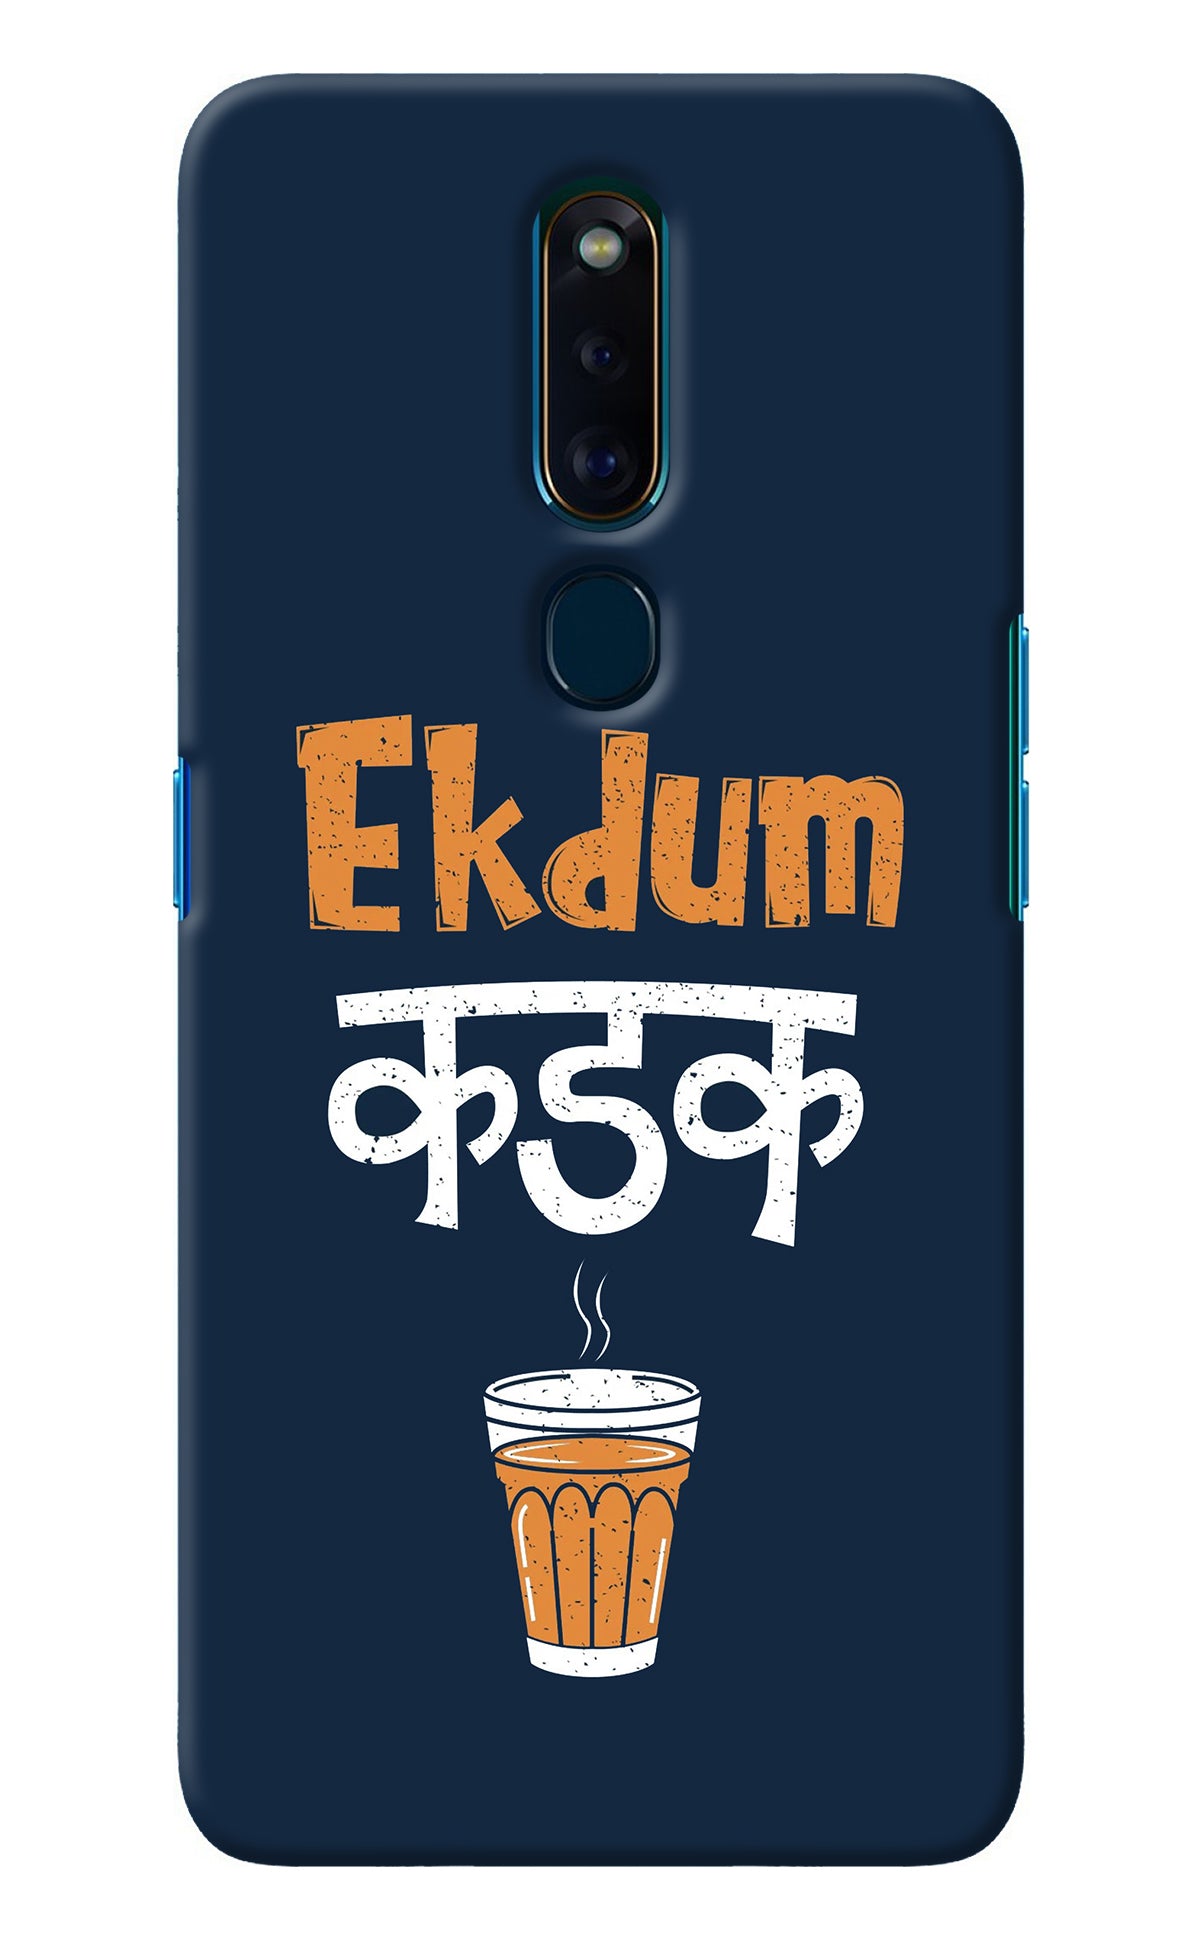 Ekdum Kadak Chai Oppo F11 Pro Back Cover